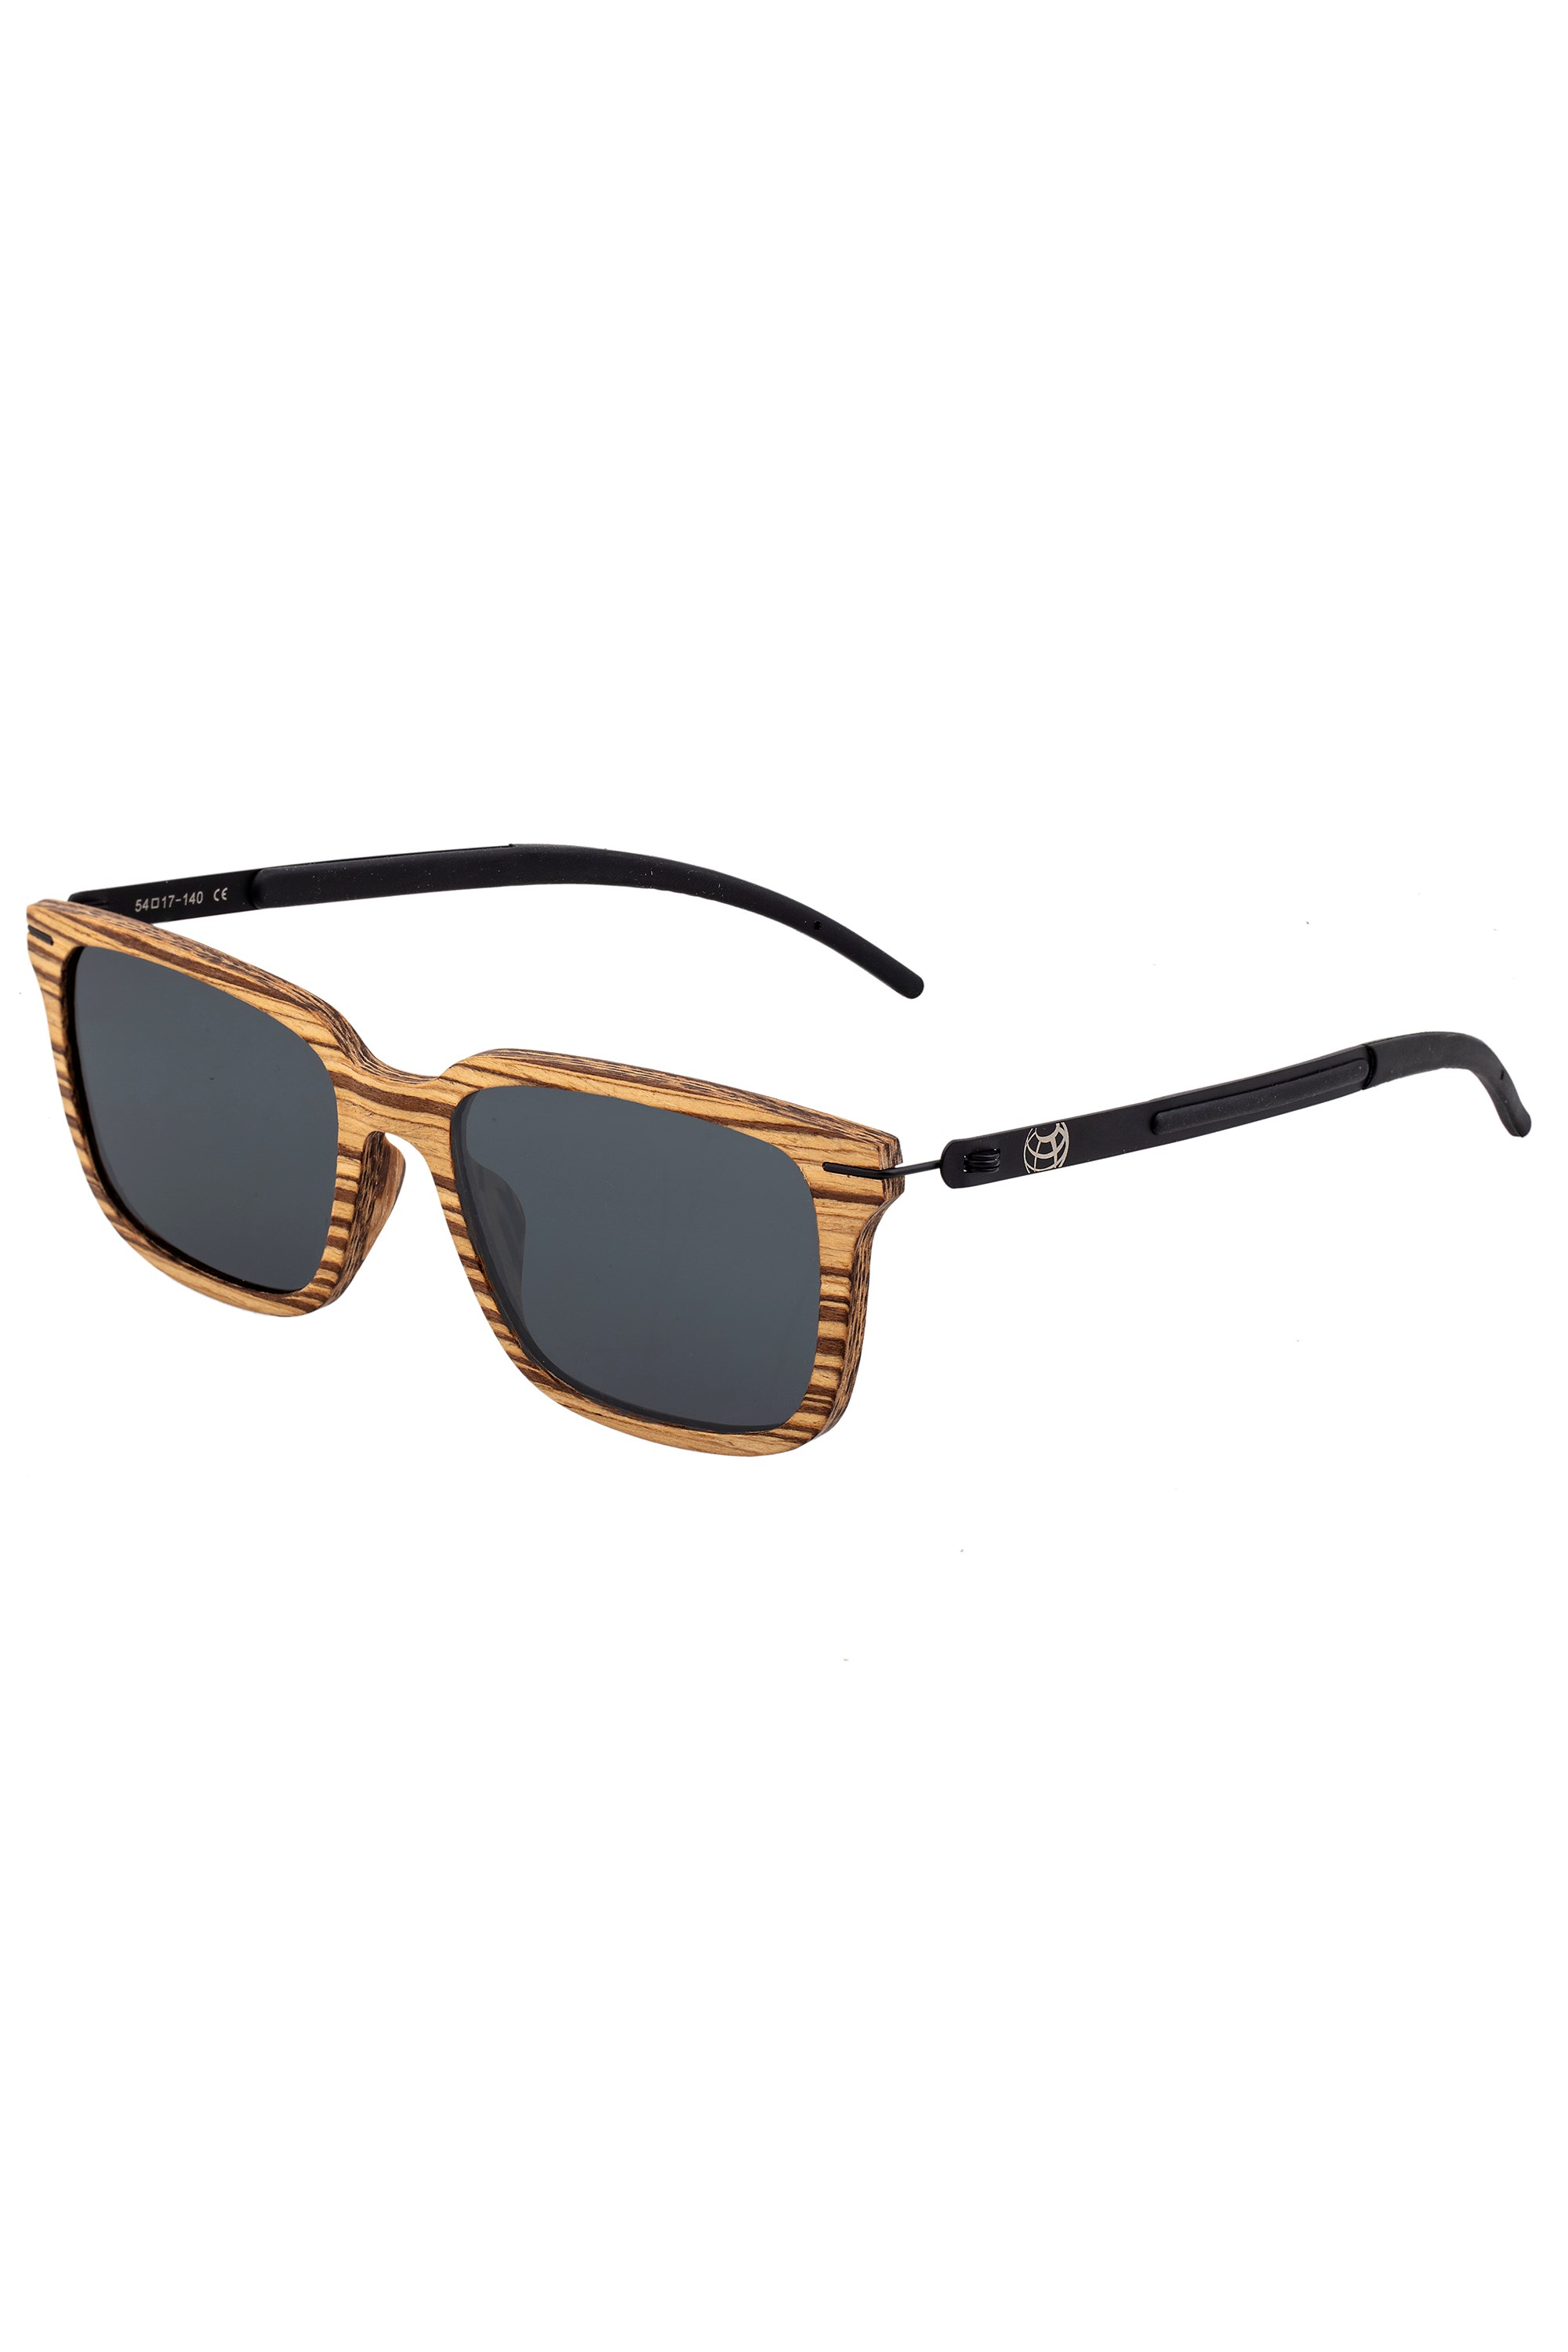 Doumia Polarized Sunglasses -